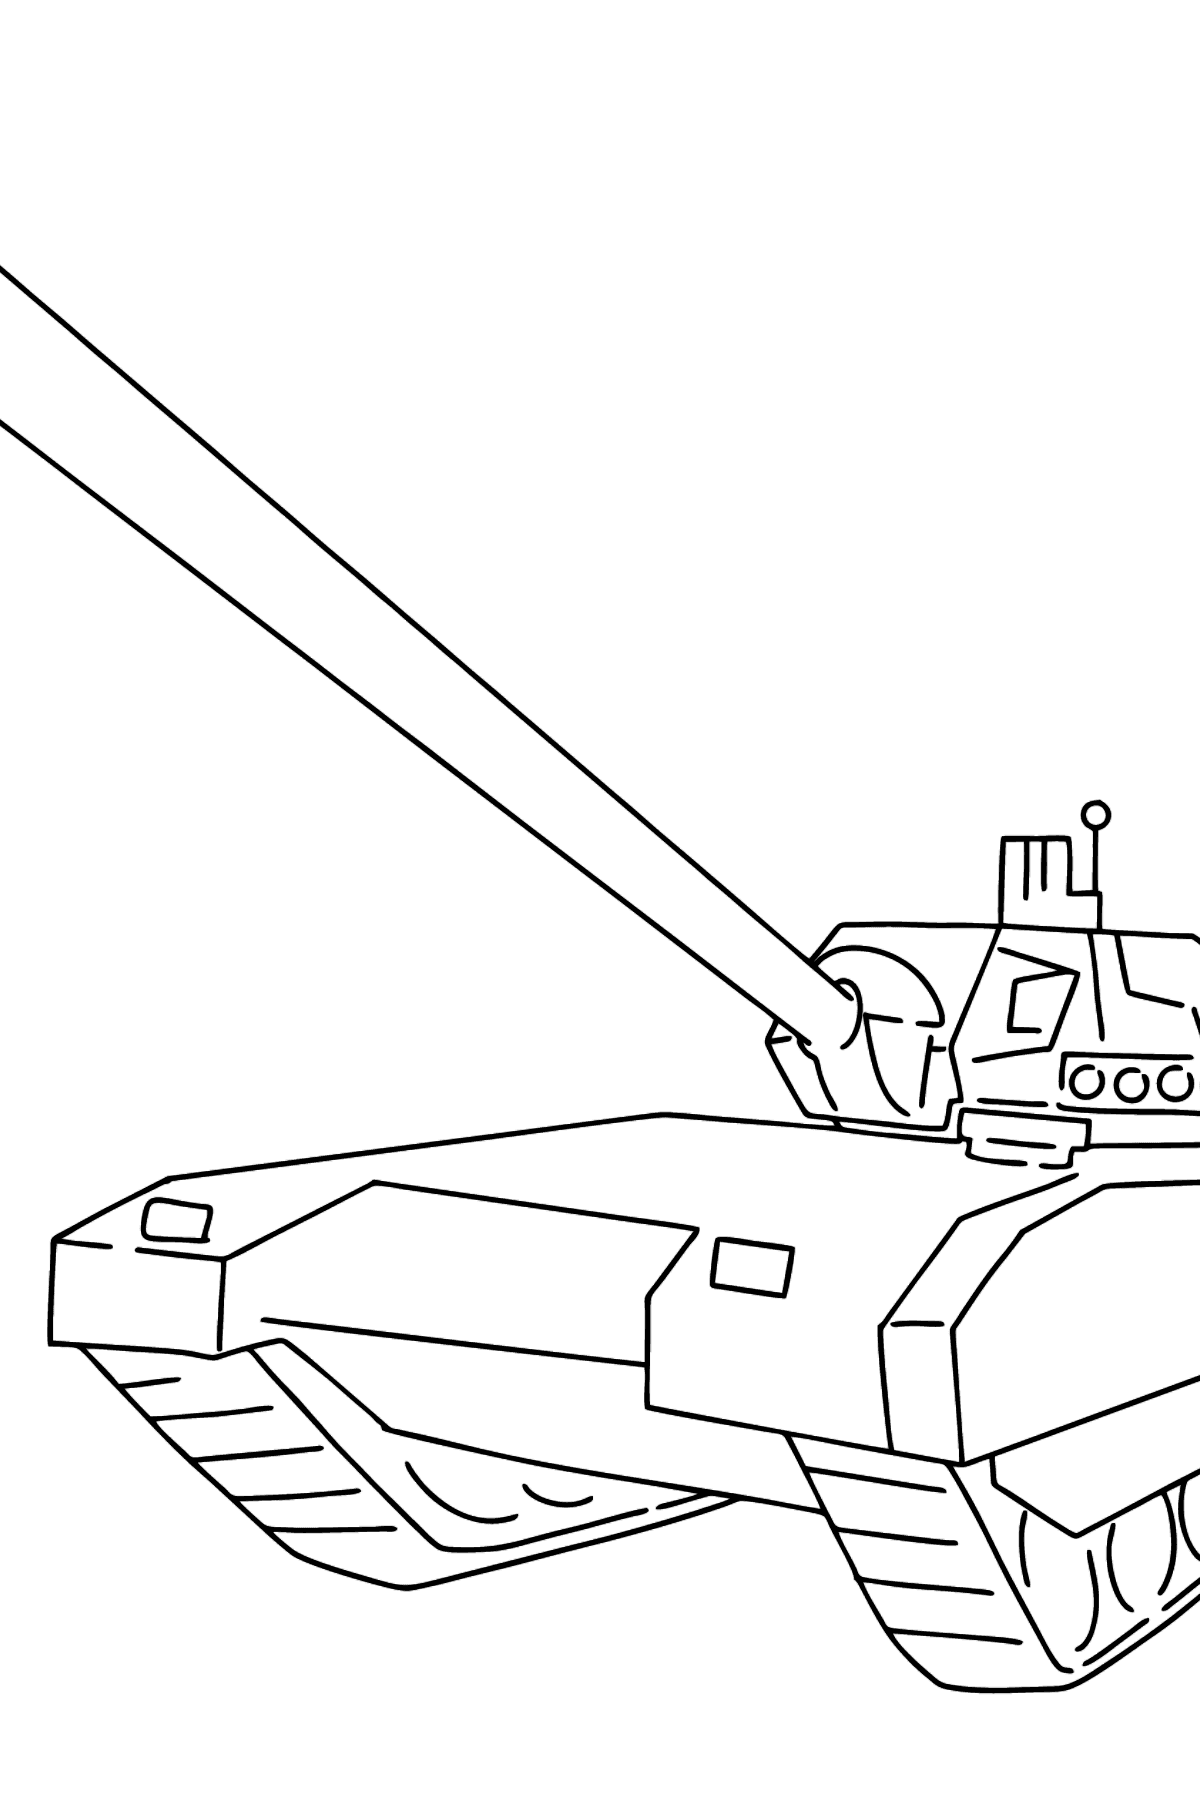 Desenho para colorir do tanque Armata - Imagens para Colorir para Crianças